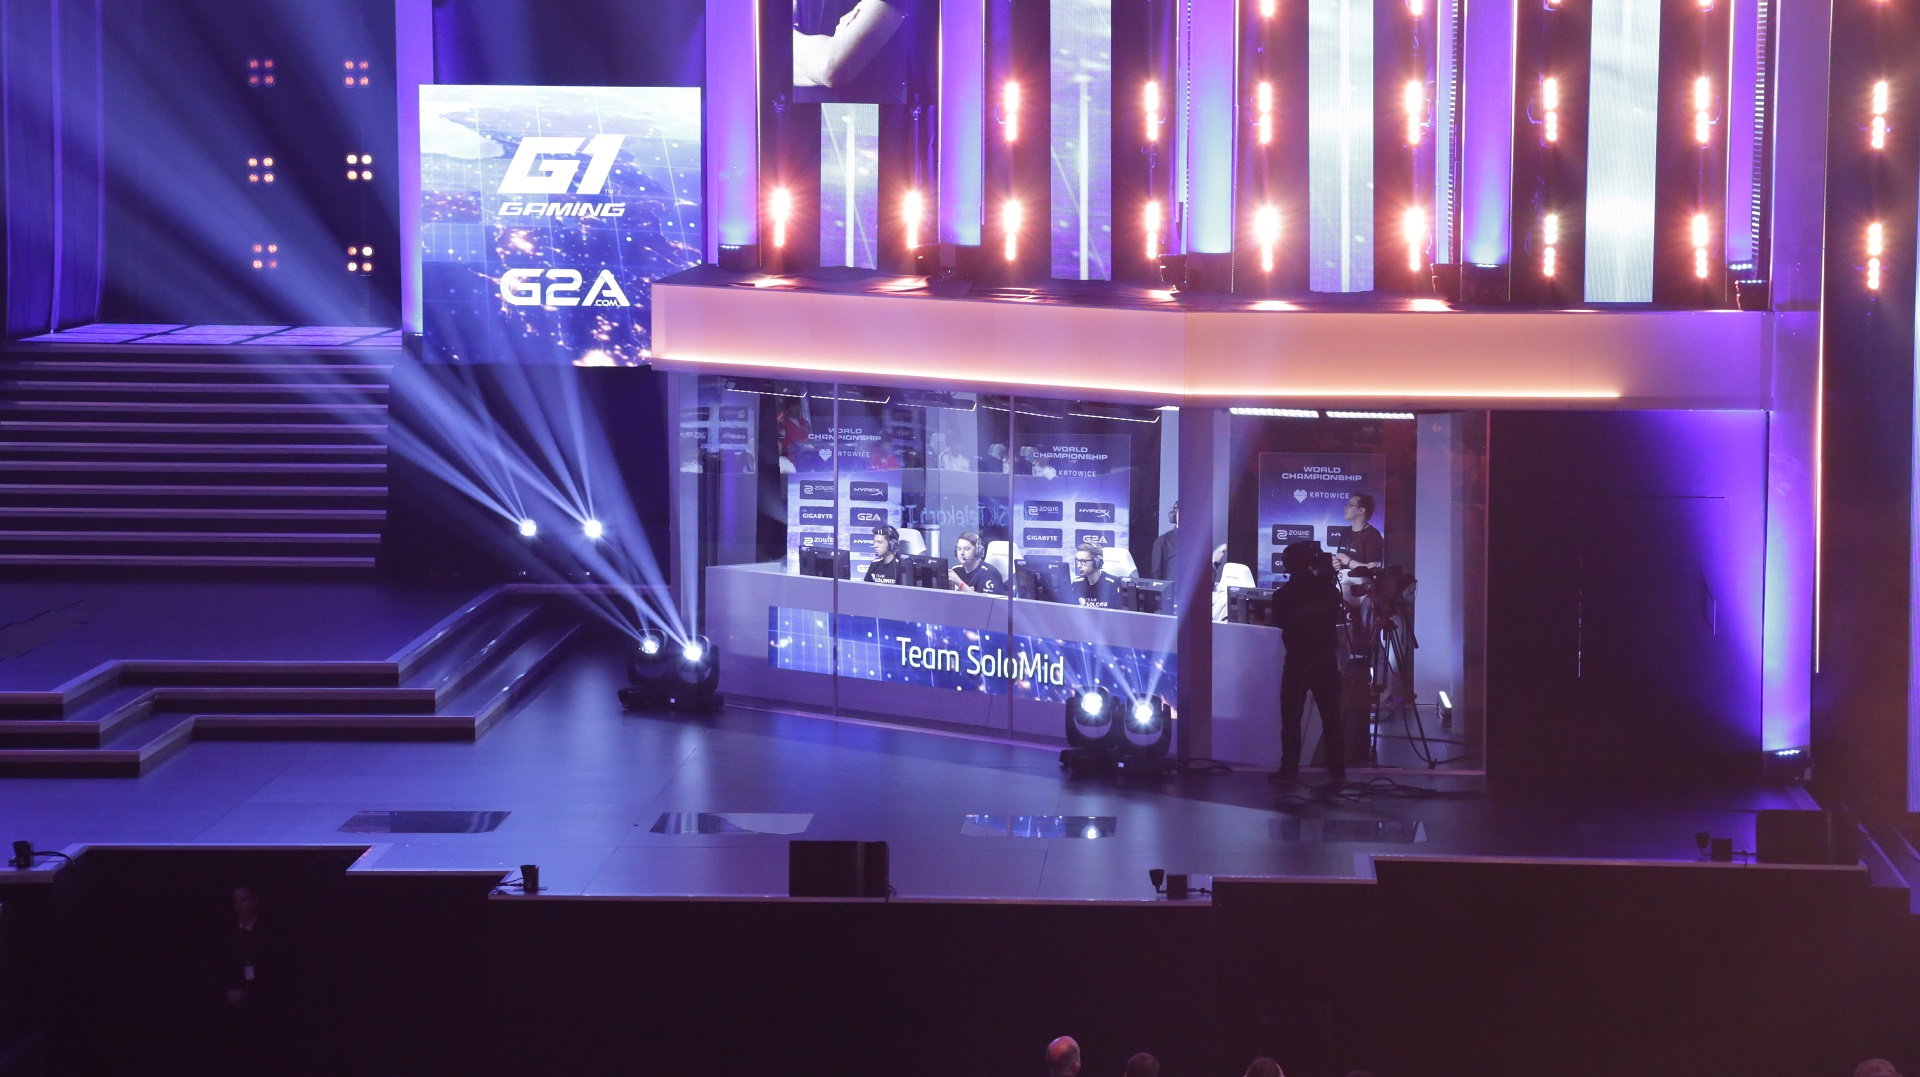 

Widok trybun na głównej scenie

, Pięć najlepszych rzeczy na Intel Extreme Masters Katowice 2016